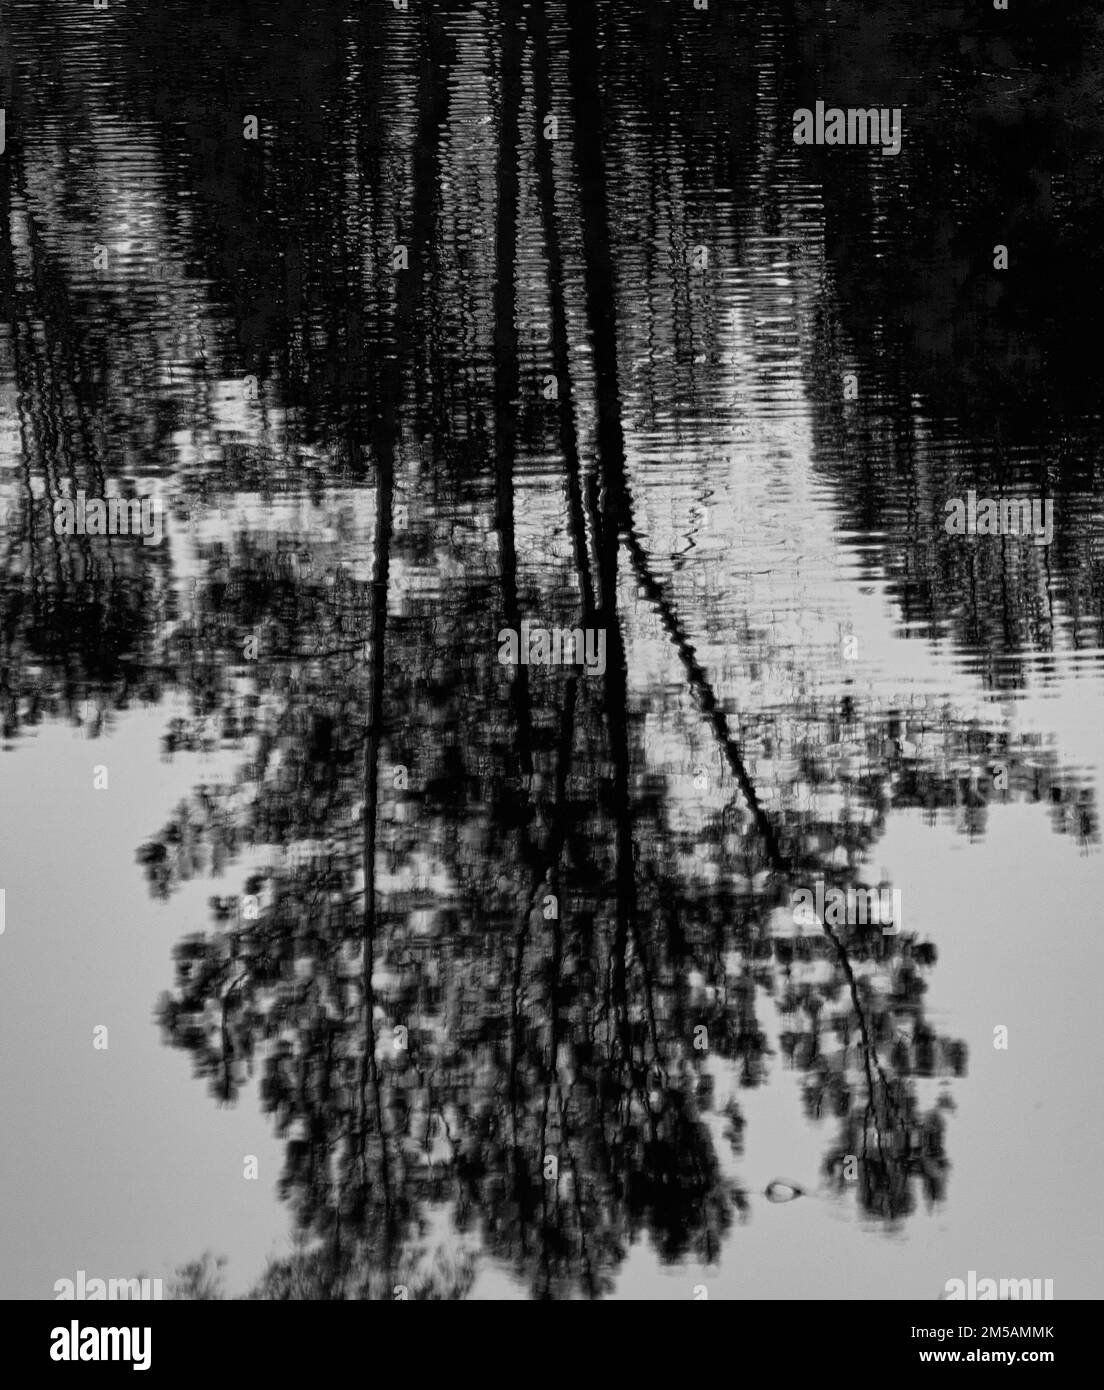 Photo en niveaux de gris d'arbres se reflétant dans l'eau Banque D'Images